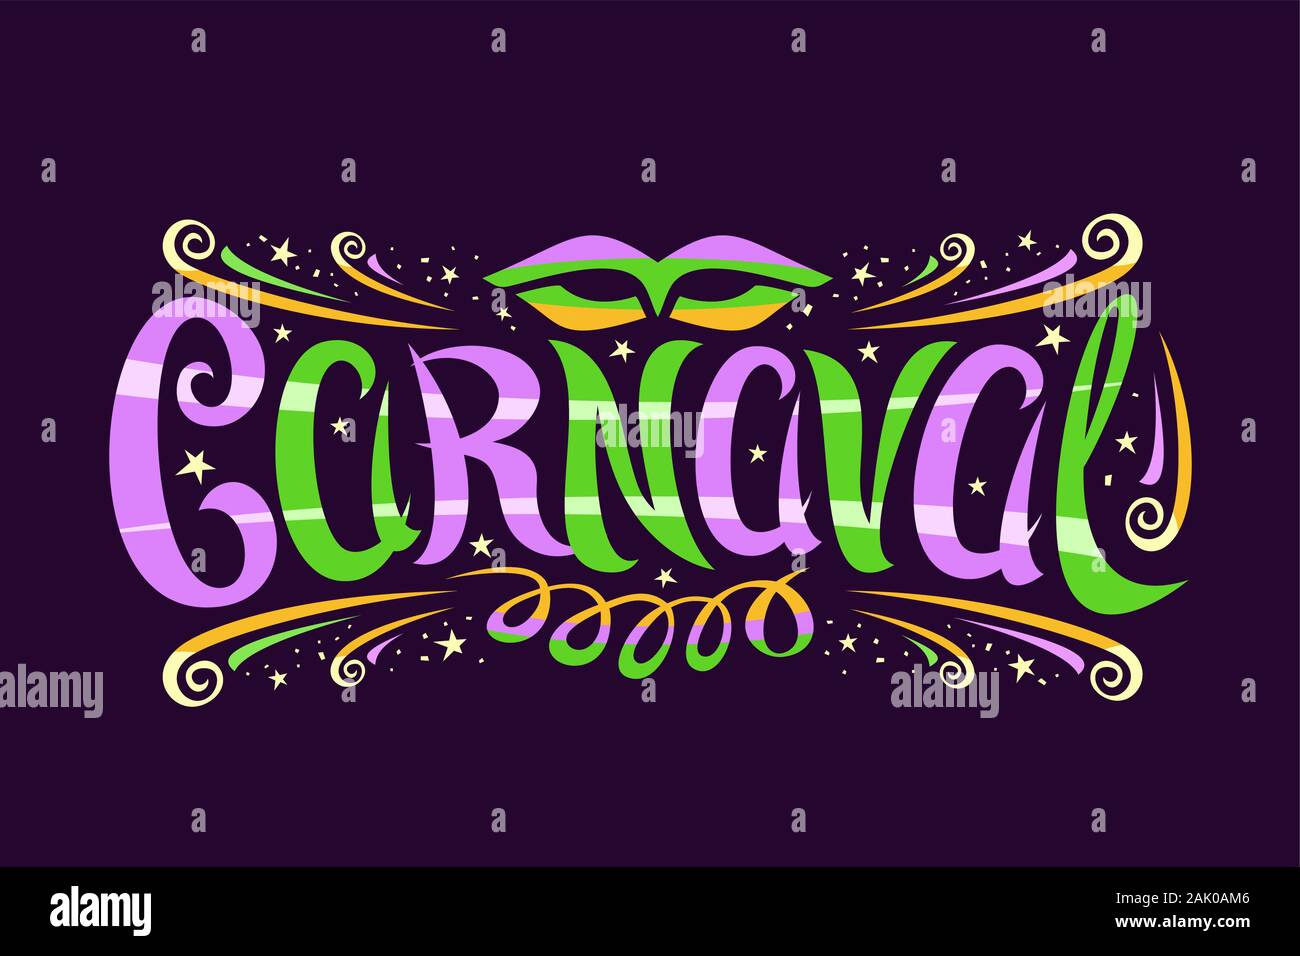 Logo Vector pour carnaval, étiquette horizontale de police calligraphique, la conception s'épanouit, masque de carnaval et de banderoles, panneaux décoratifs avec brosse Illustration de Vecteur